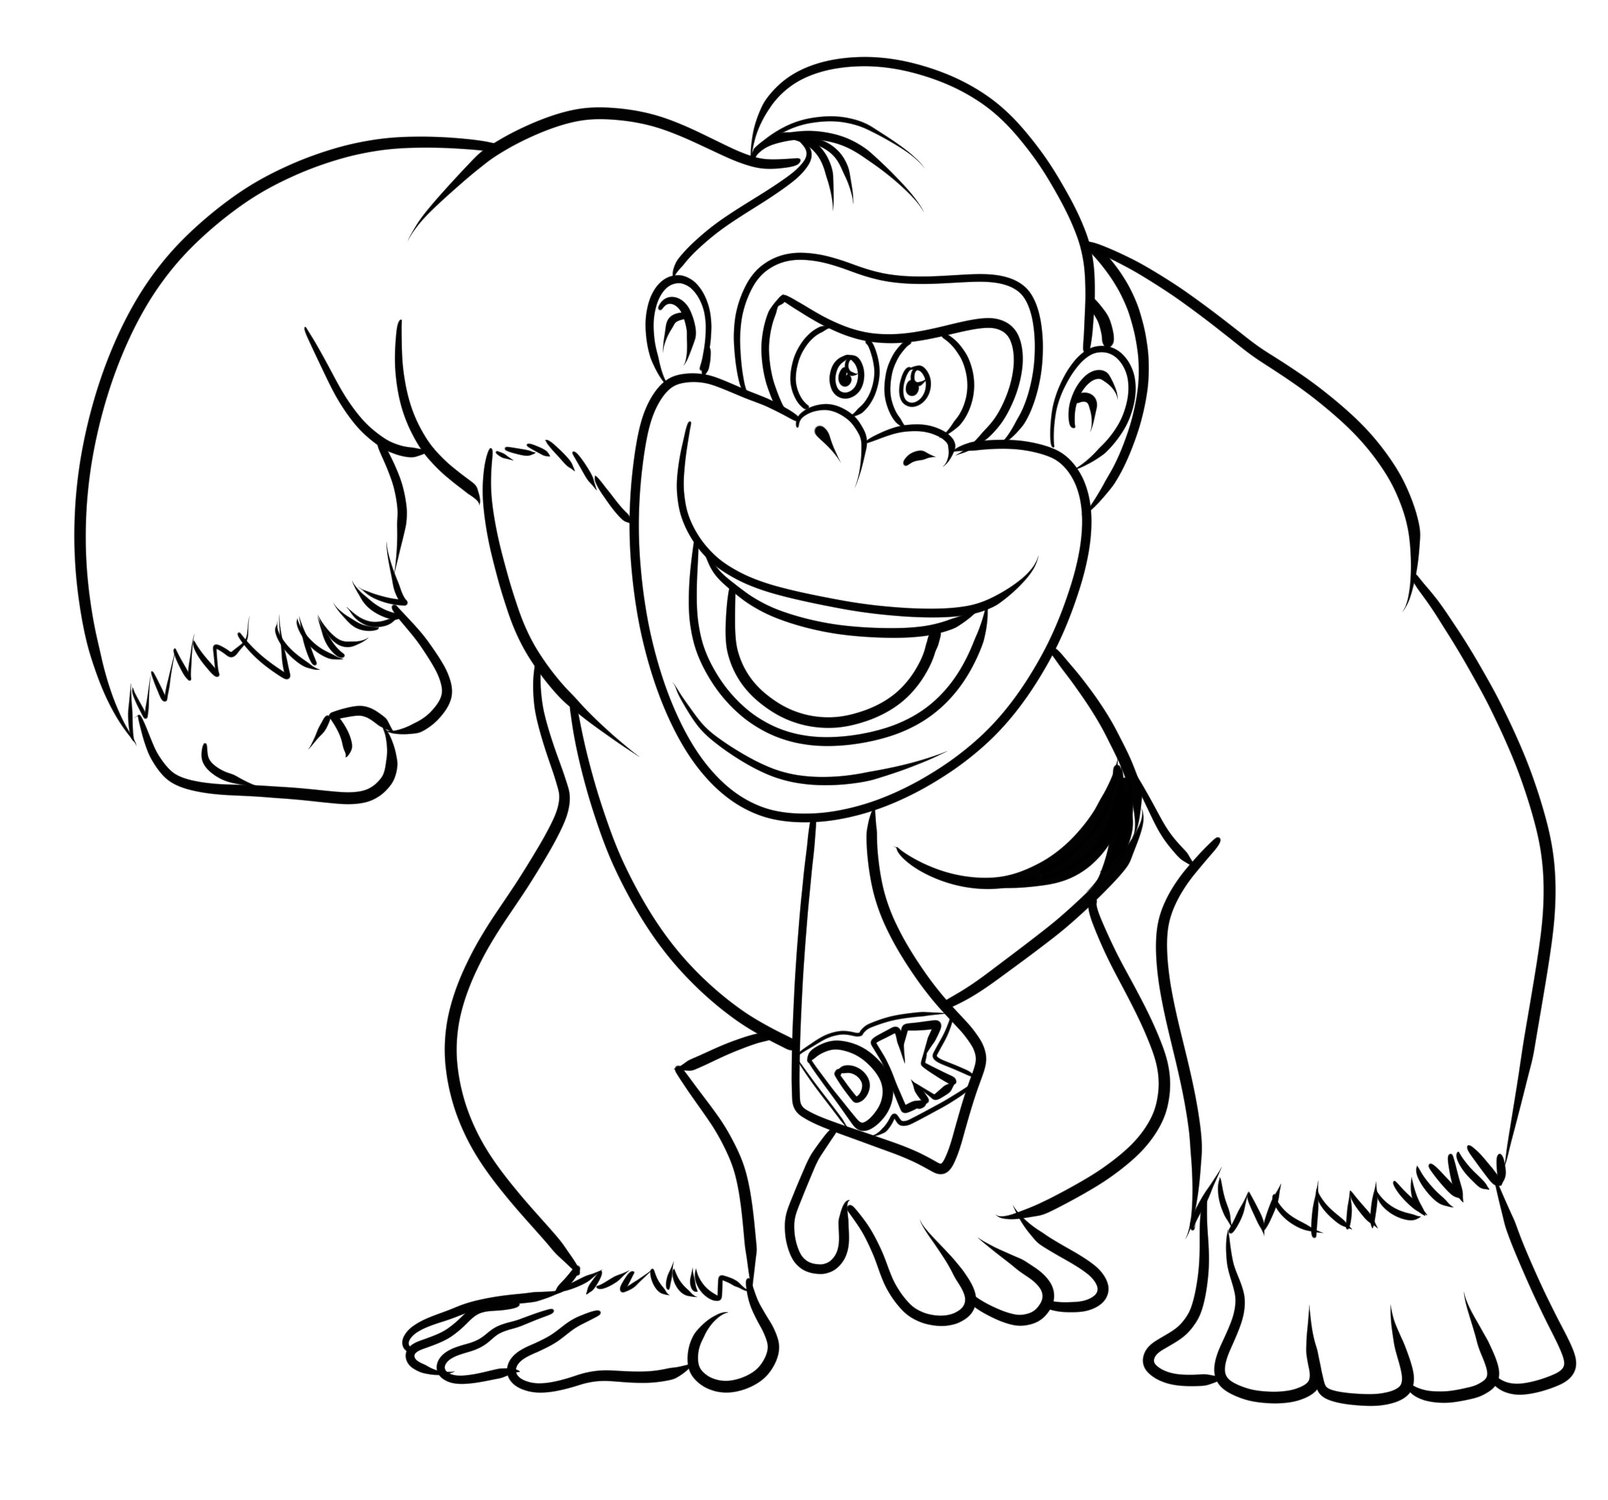 Disegno 03 di Donkey Kong da stampare e colorare